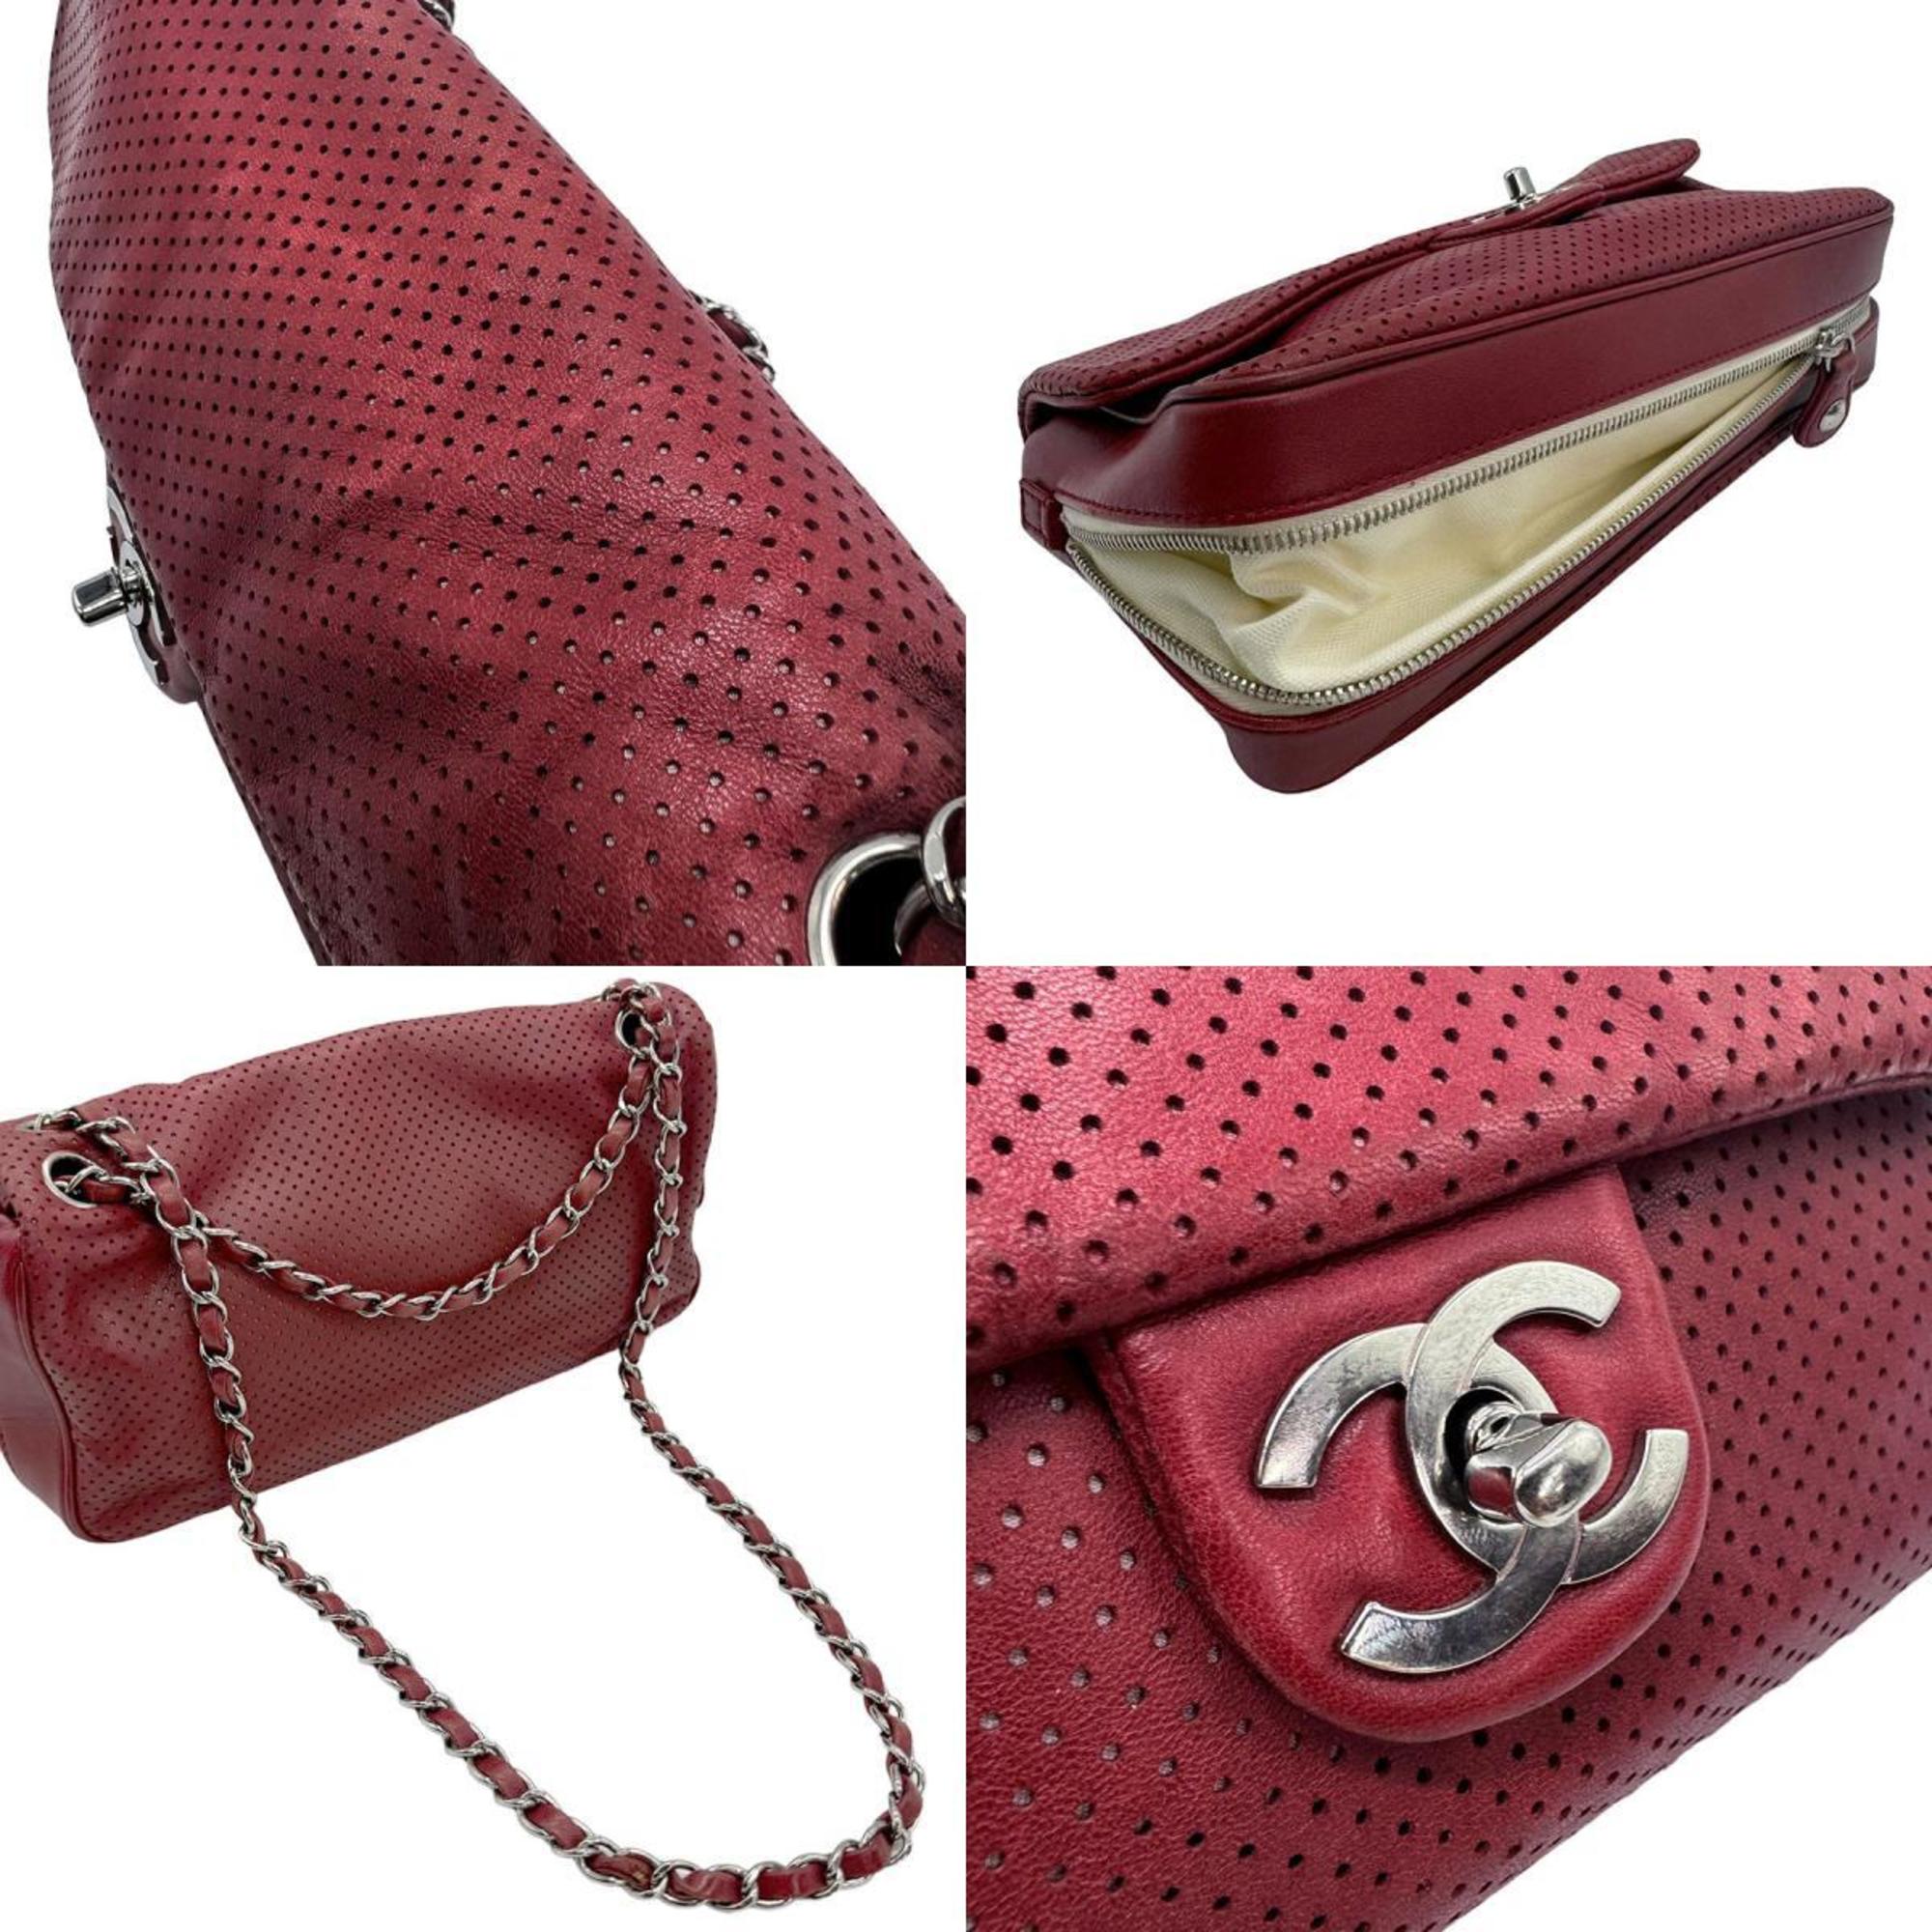 CHANEL Shoulder Bag Leather Red Women's z0770